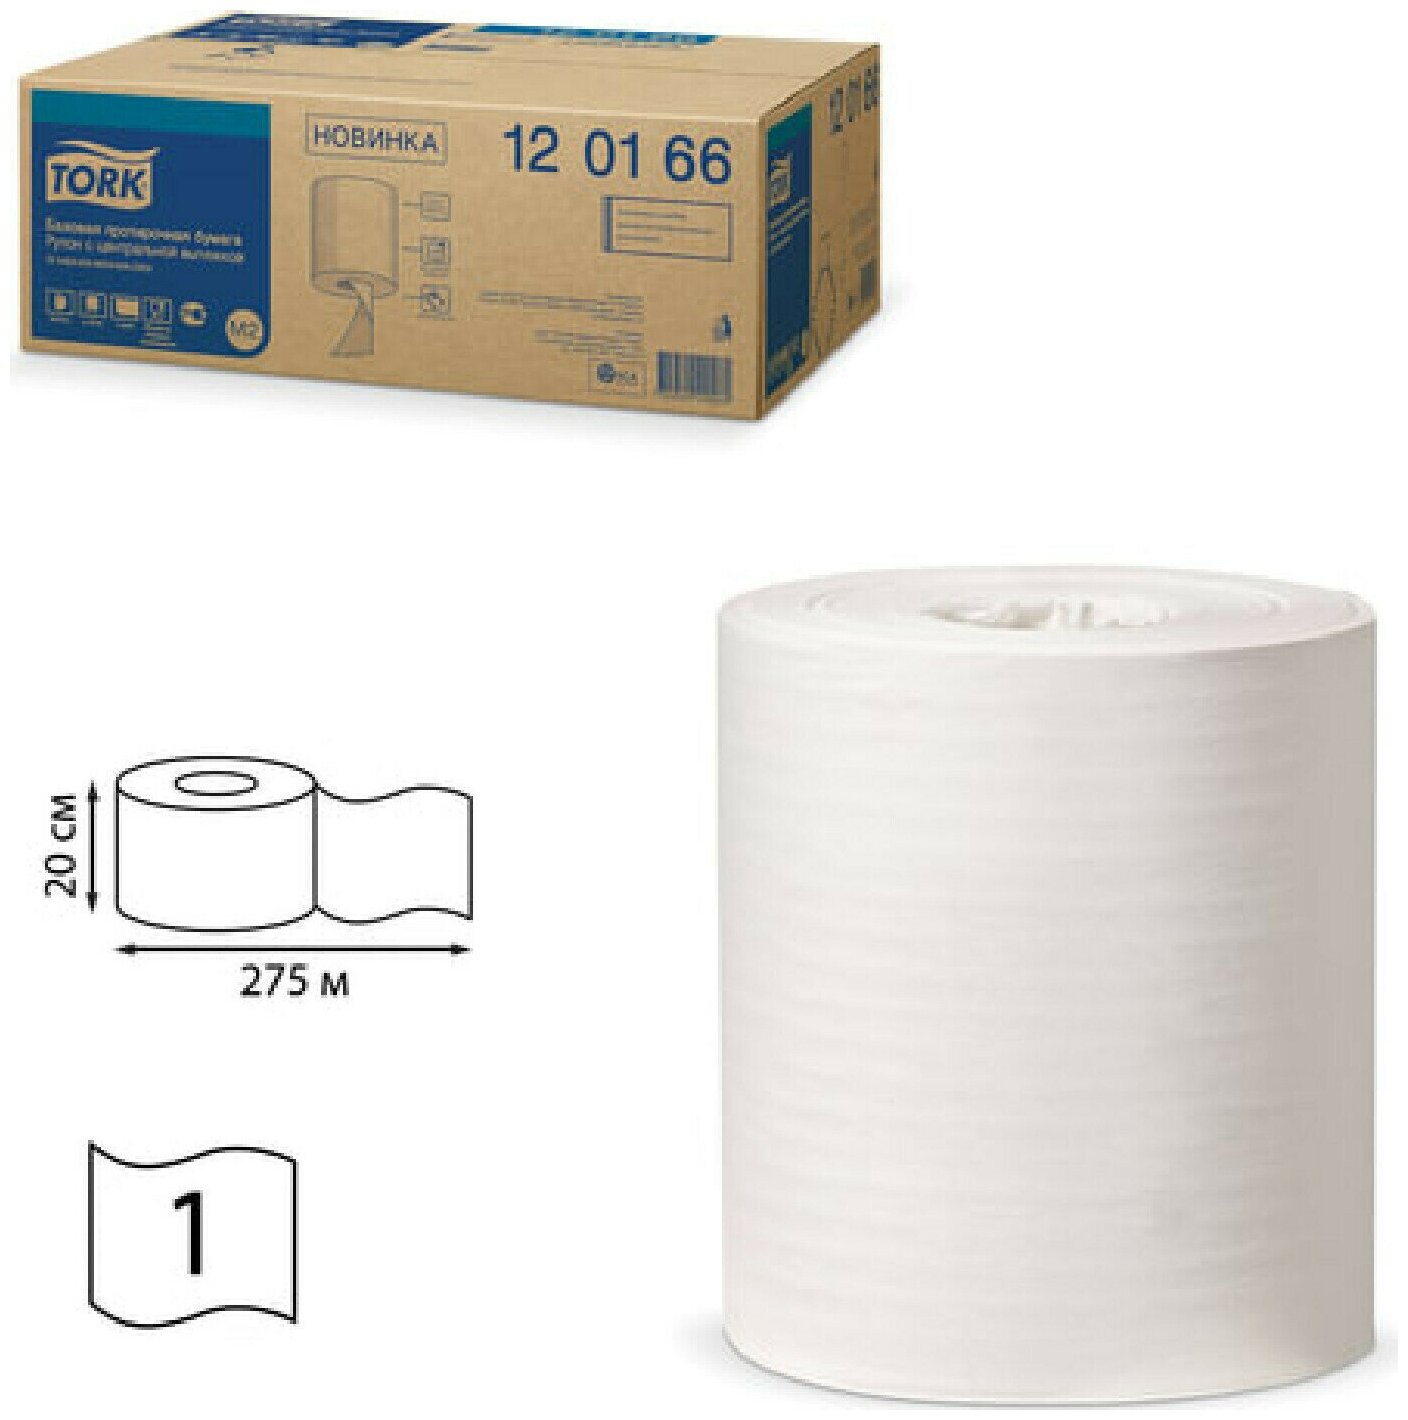 Бумажные полотенца Полотенца бумажные с центральной вытяжкой TORK (Система M2), комплект 6 шт, Universal, 275 м, белые, 120166